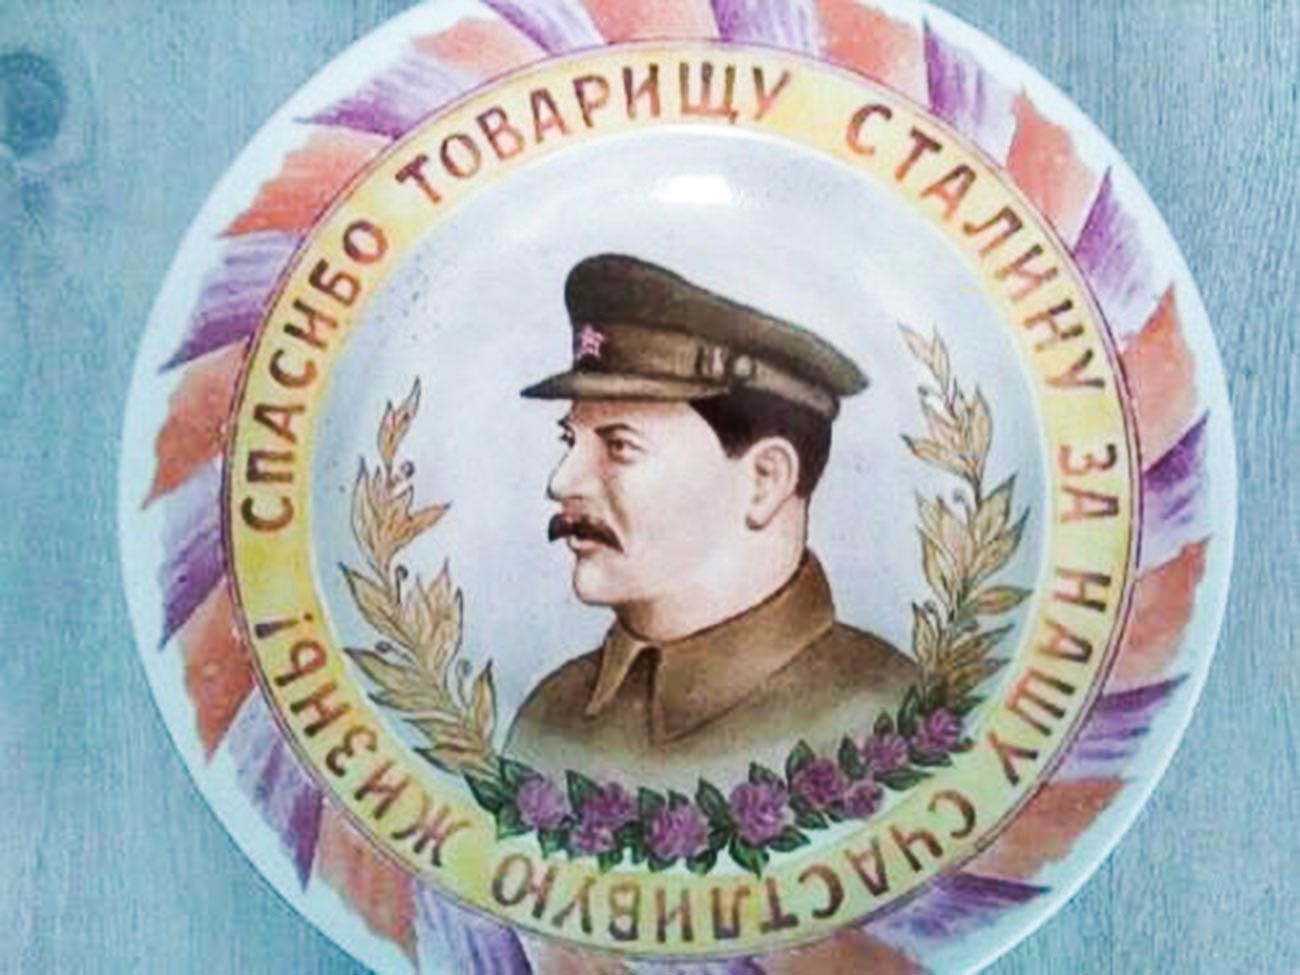 スターリンの肖像入りの宣伝用陶器